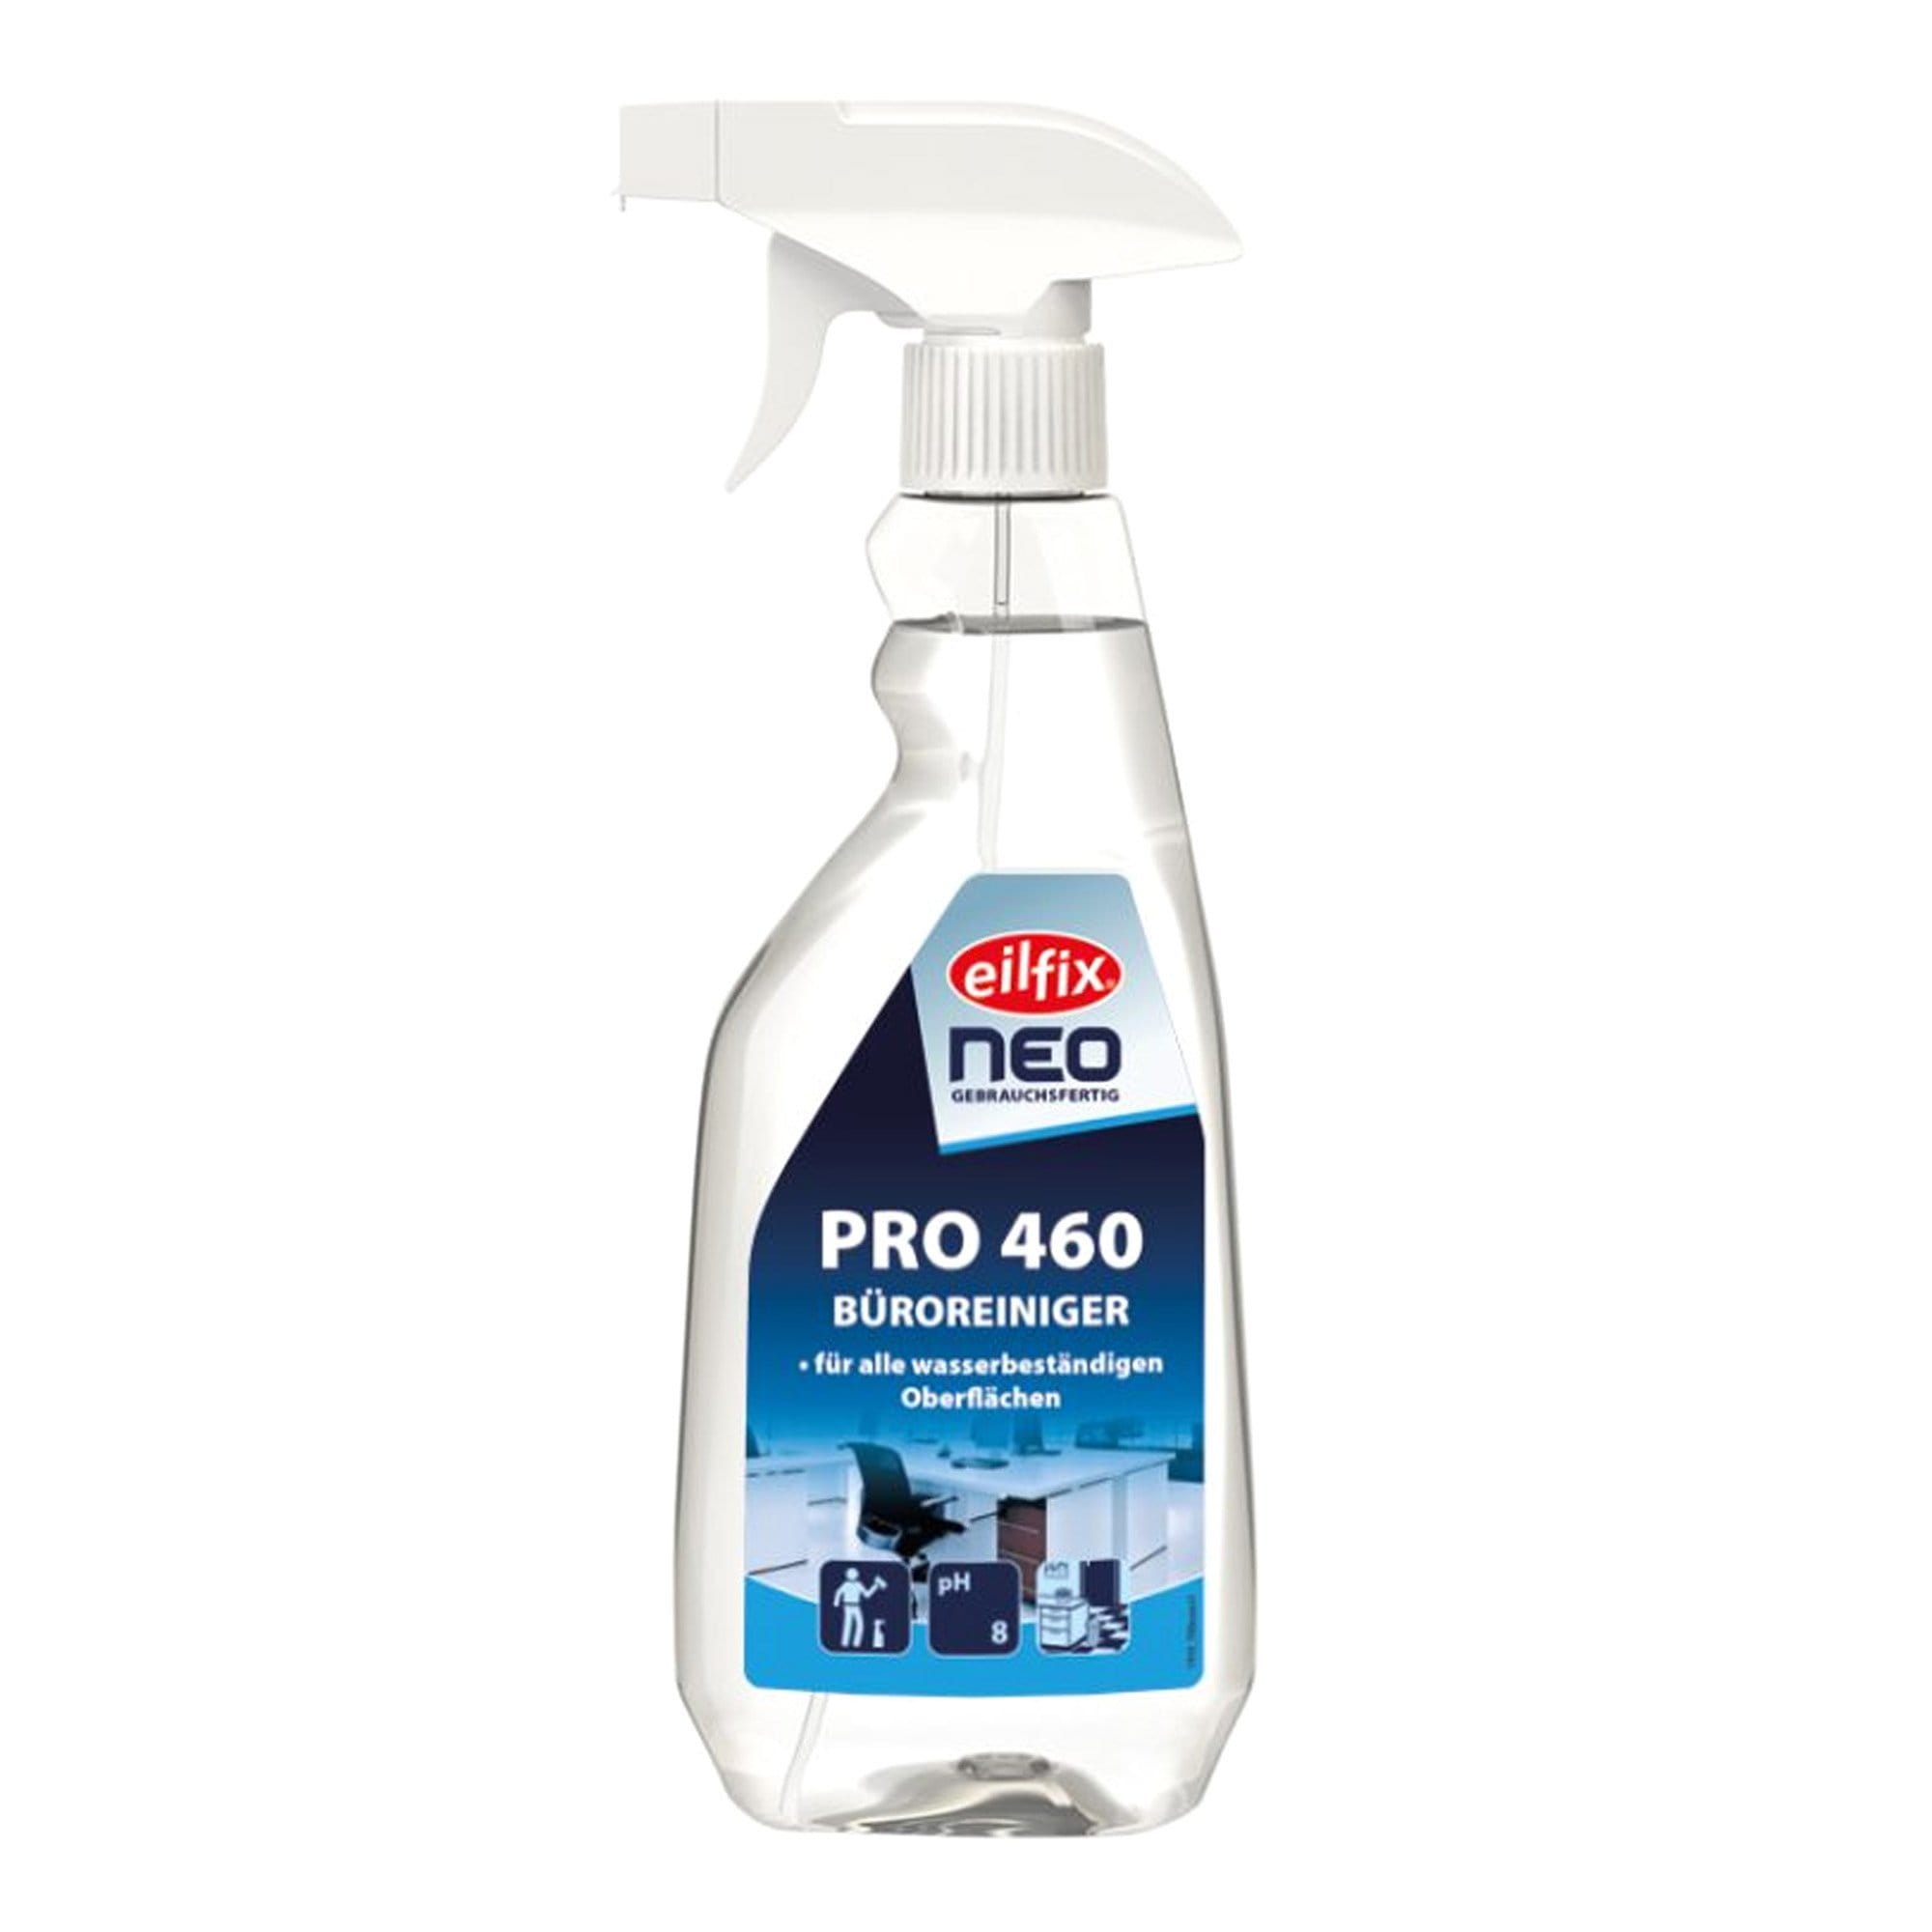 Eilfix neo PRO 460 Büroreiniger Spray 500 ml Sprühflasche 100046-500-000_1